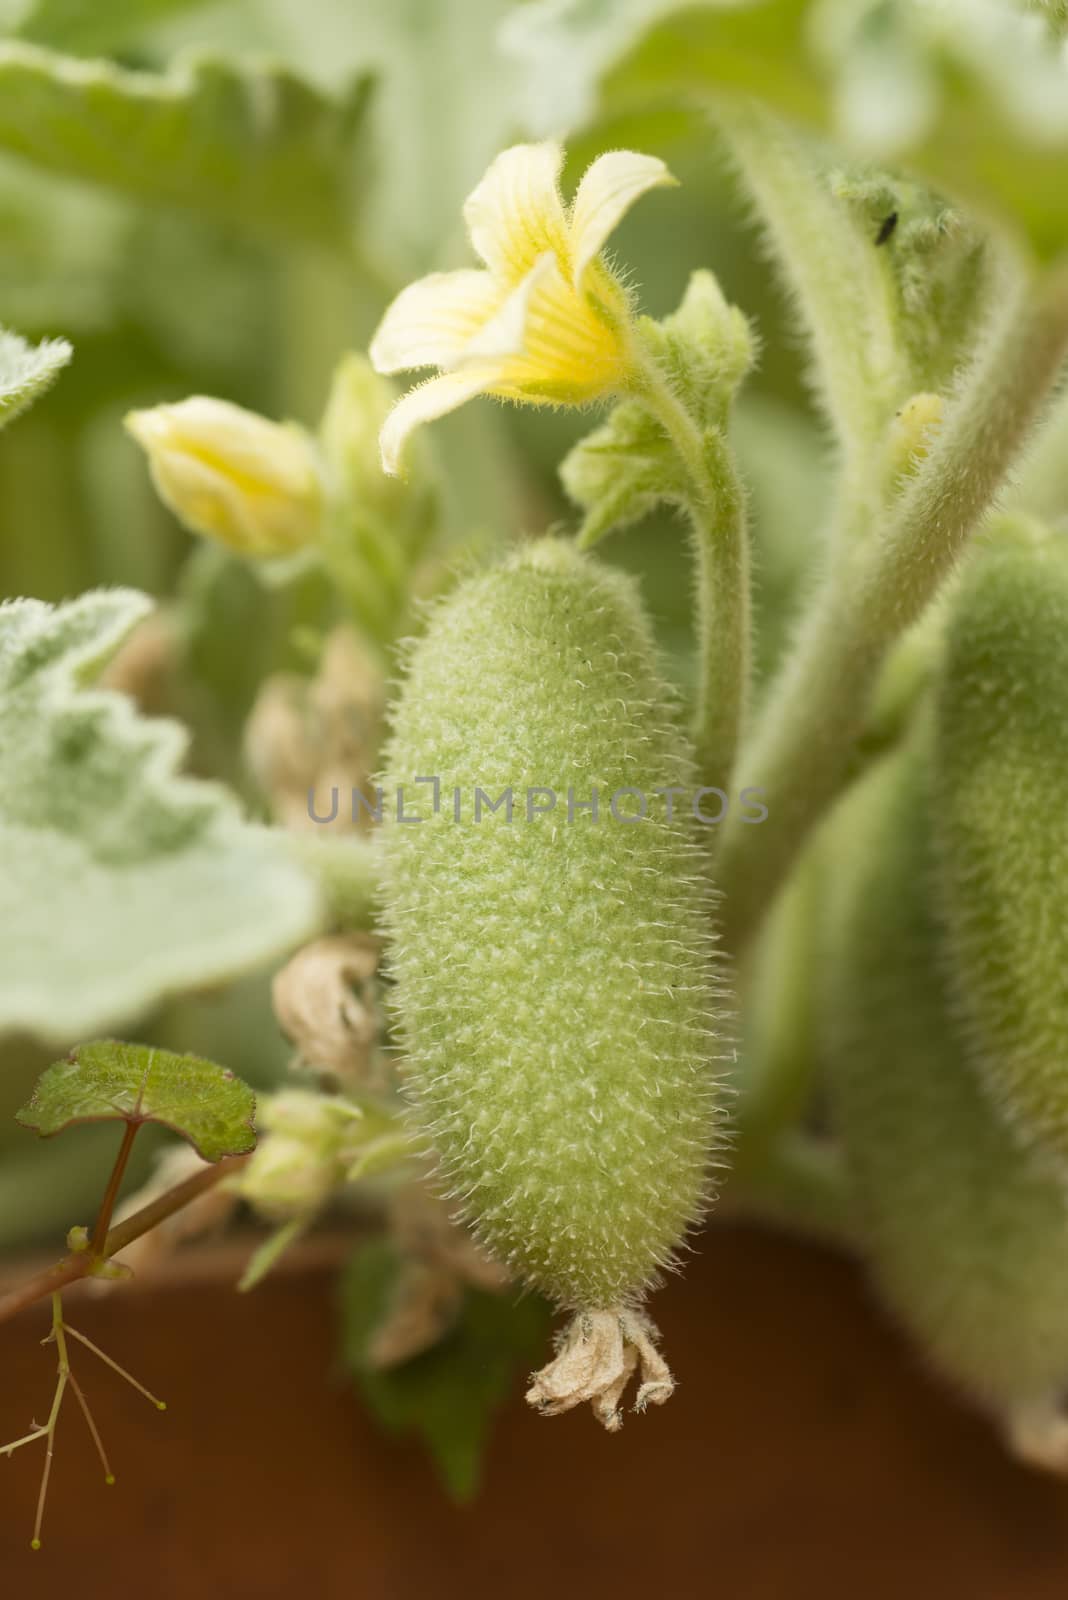 Flower and fruit of squirting cucumber or exploding cucumber, Ecballium elaterium.